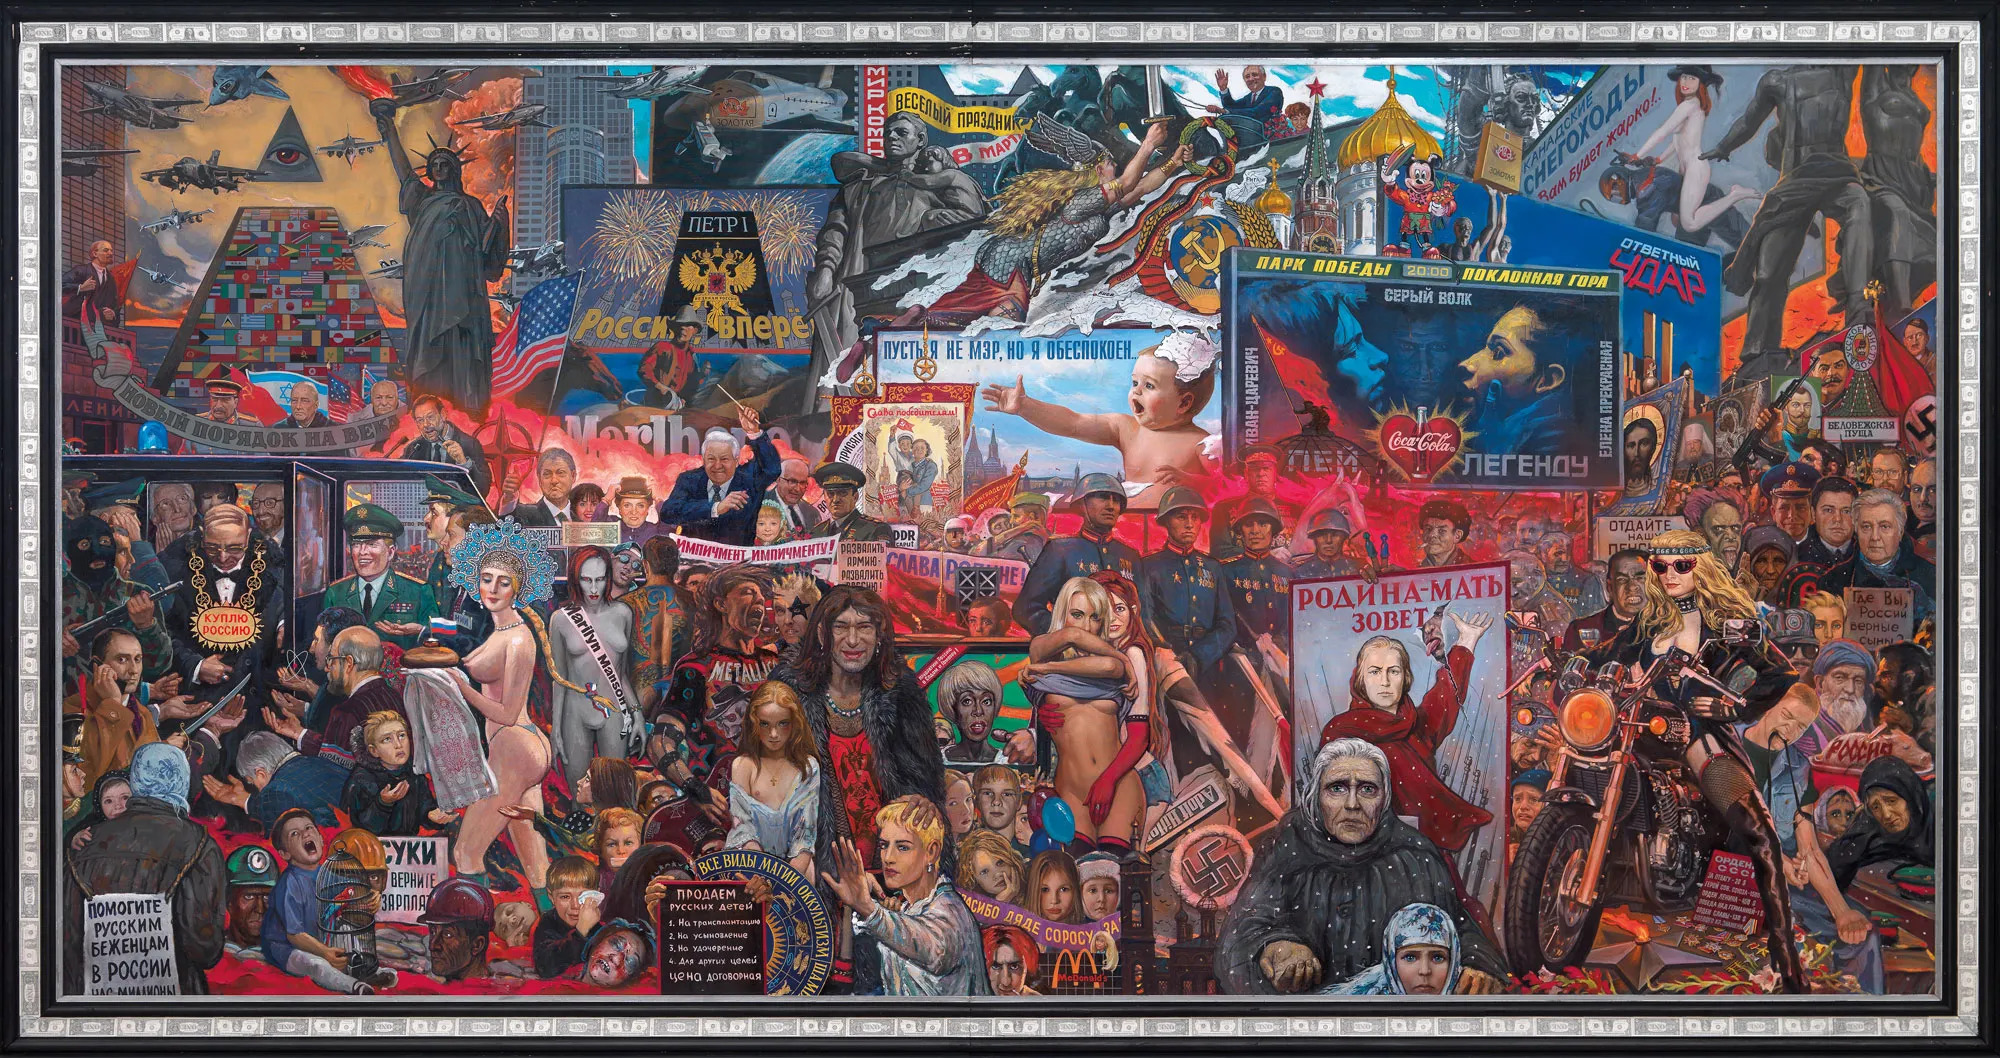 Рынок нашей демократии Илья Глазунов 1999